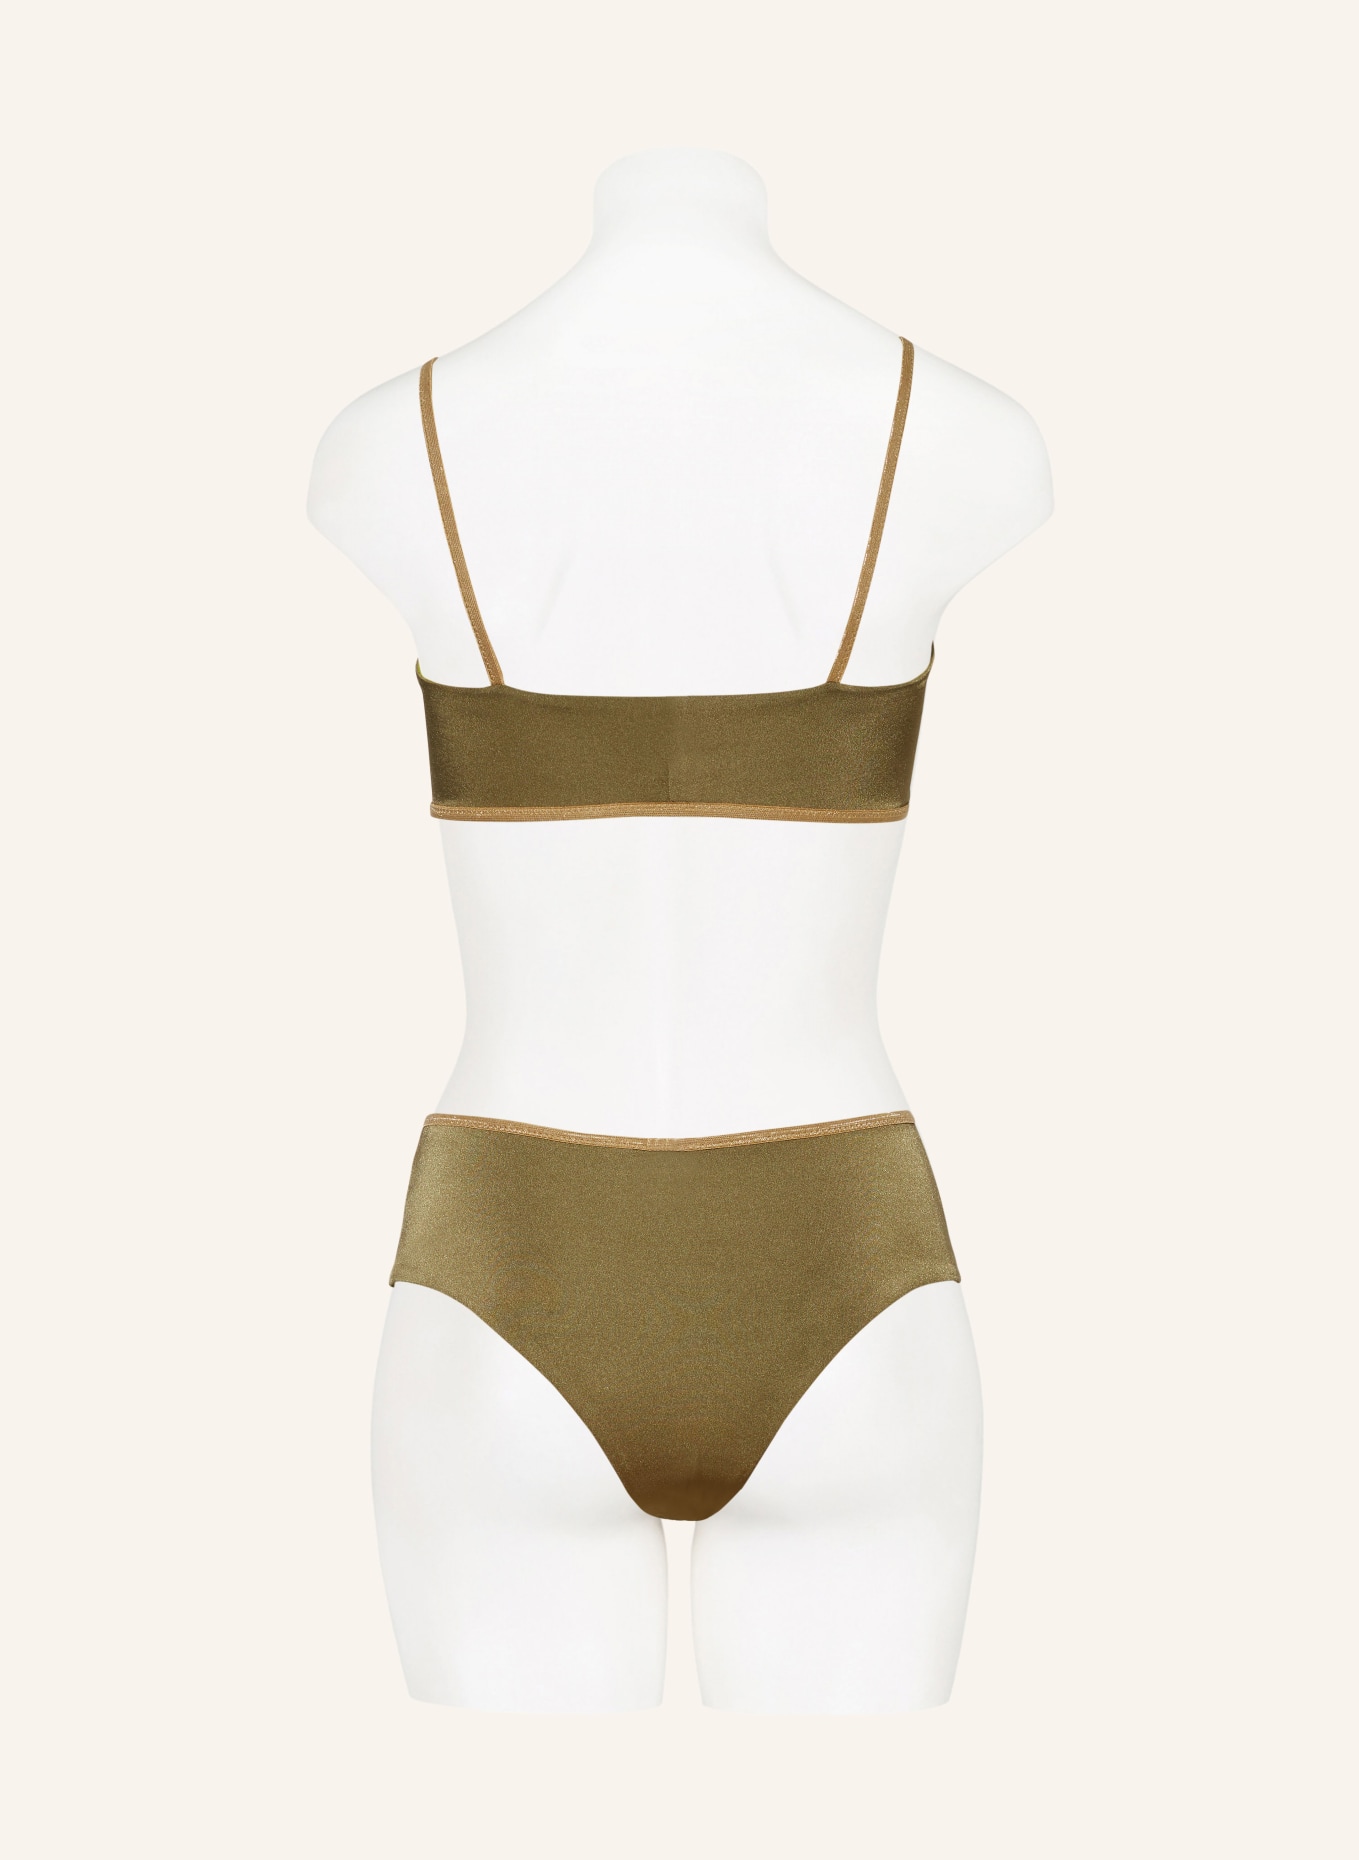 MYMARINI Bralette bikini top SHINE reversible in olive